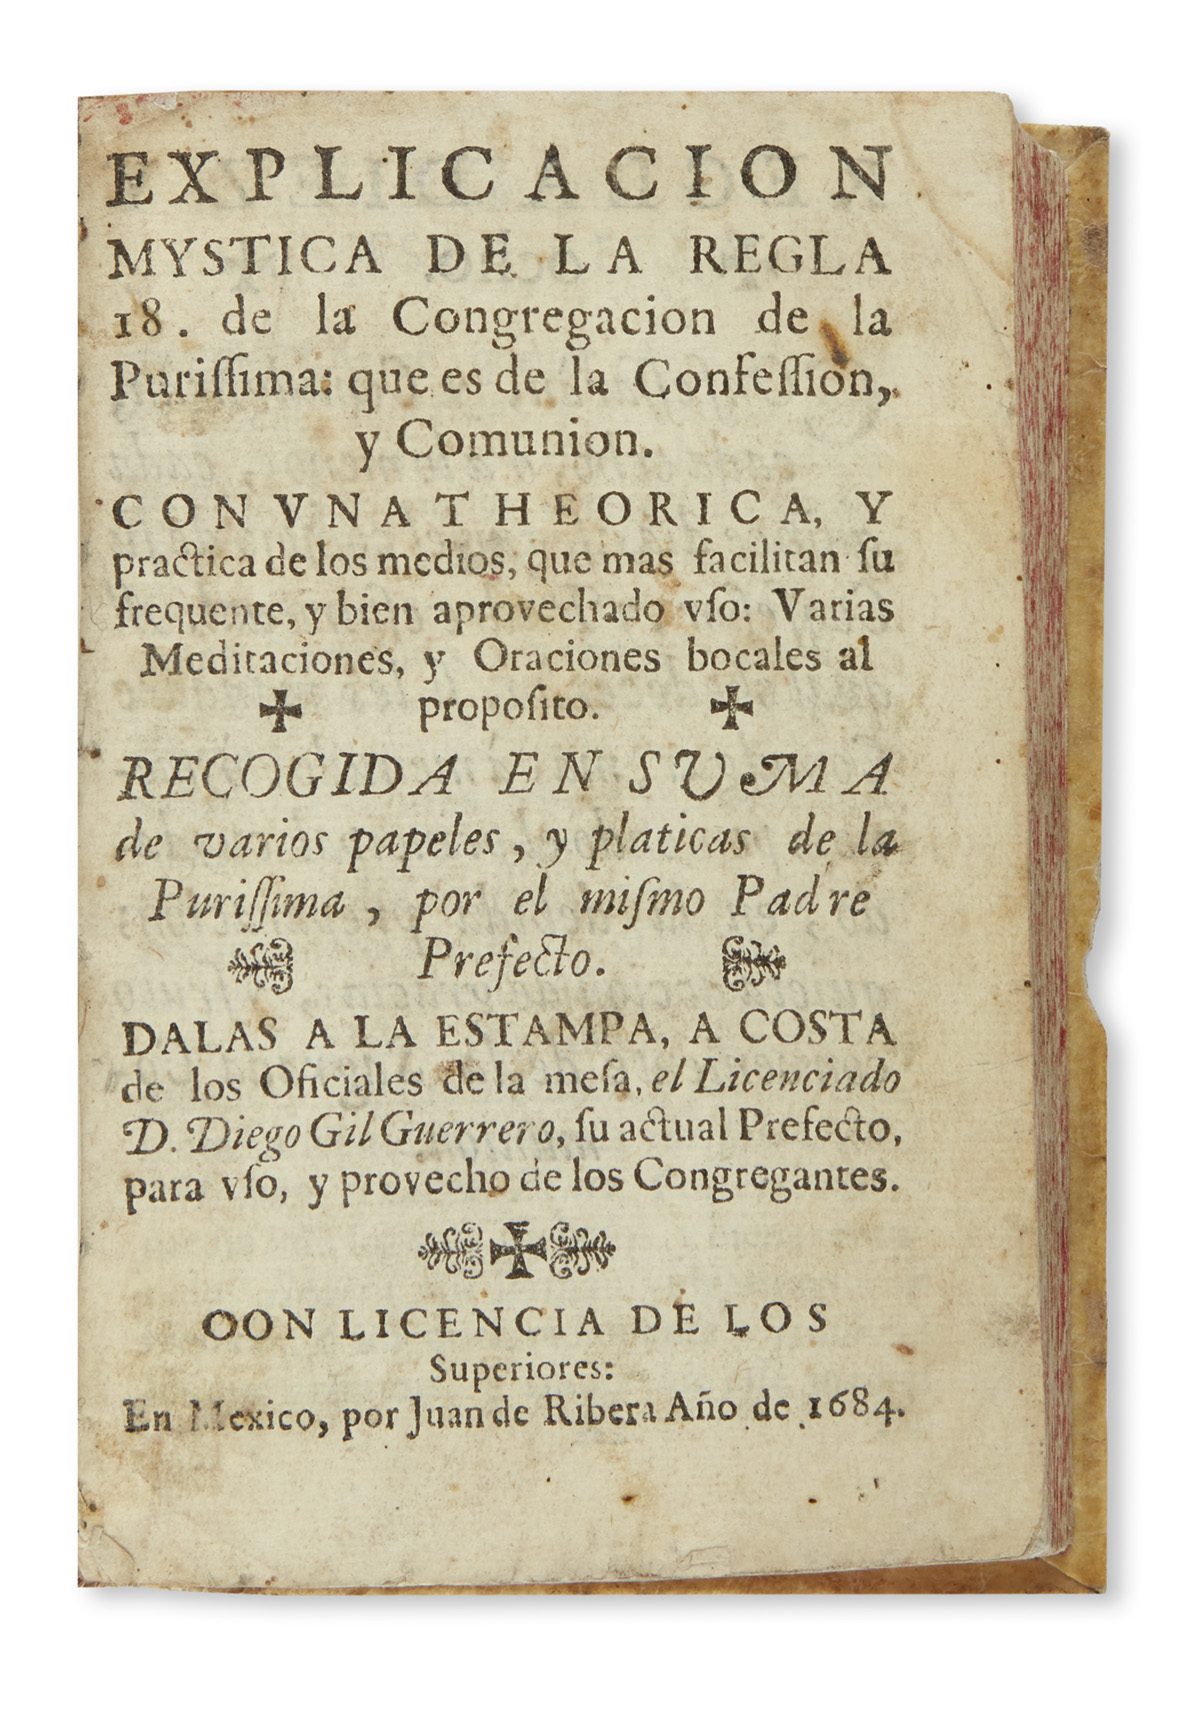 (MEXICAN IMPRINT--1684.) [Nuñez, Antonio.] Explicacion mystica de la regla 18 de la Congregacion de la Purissima